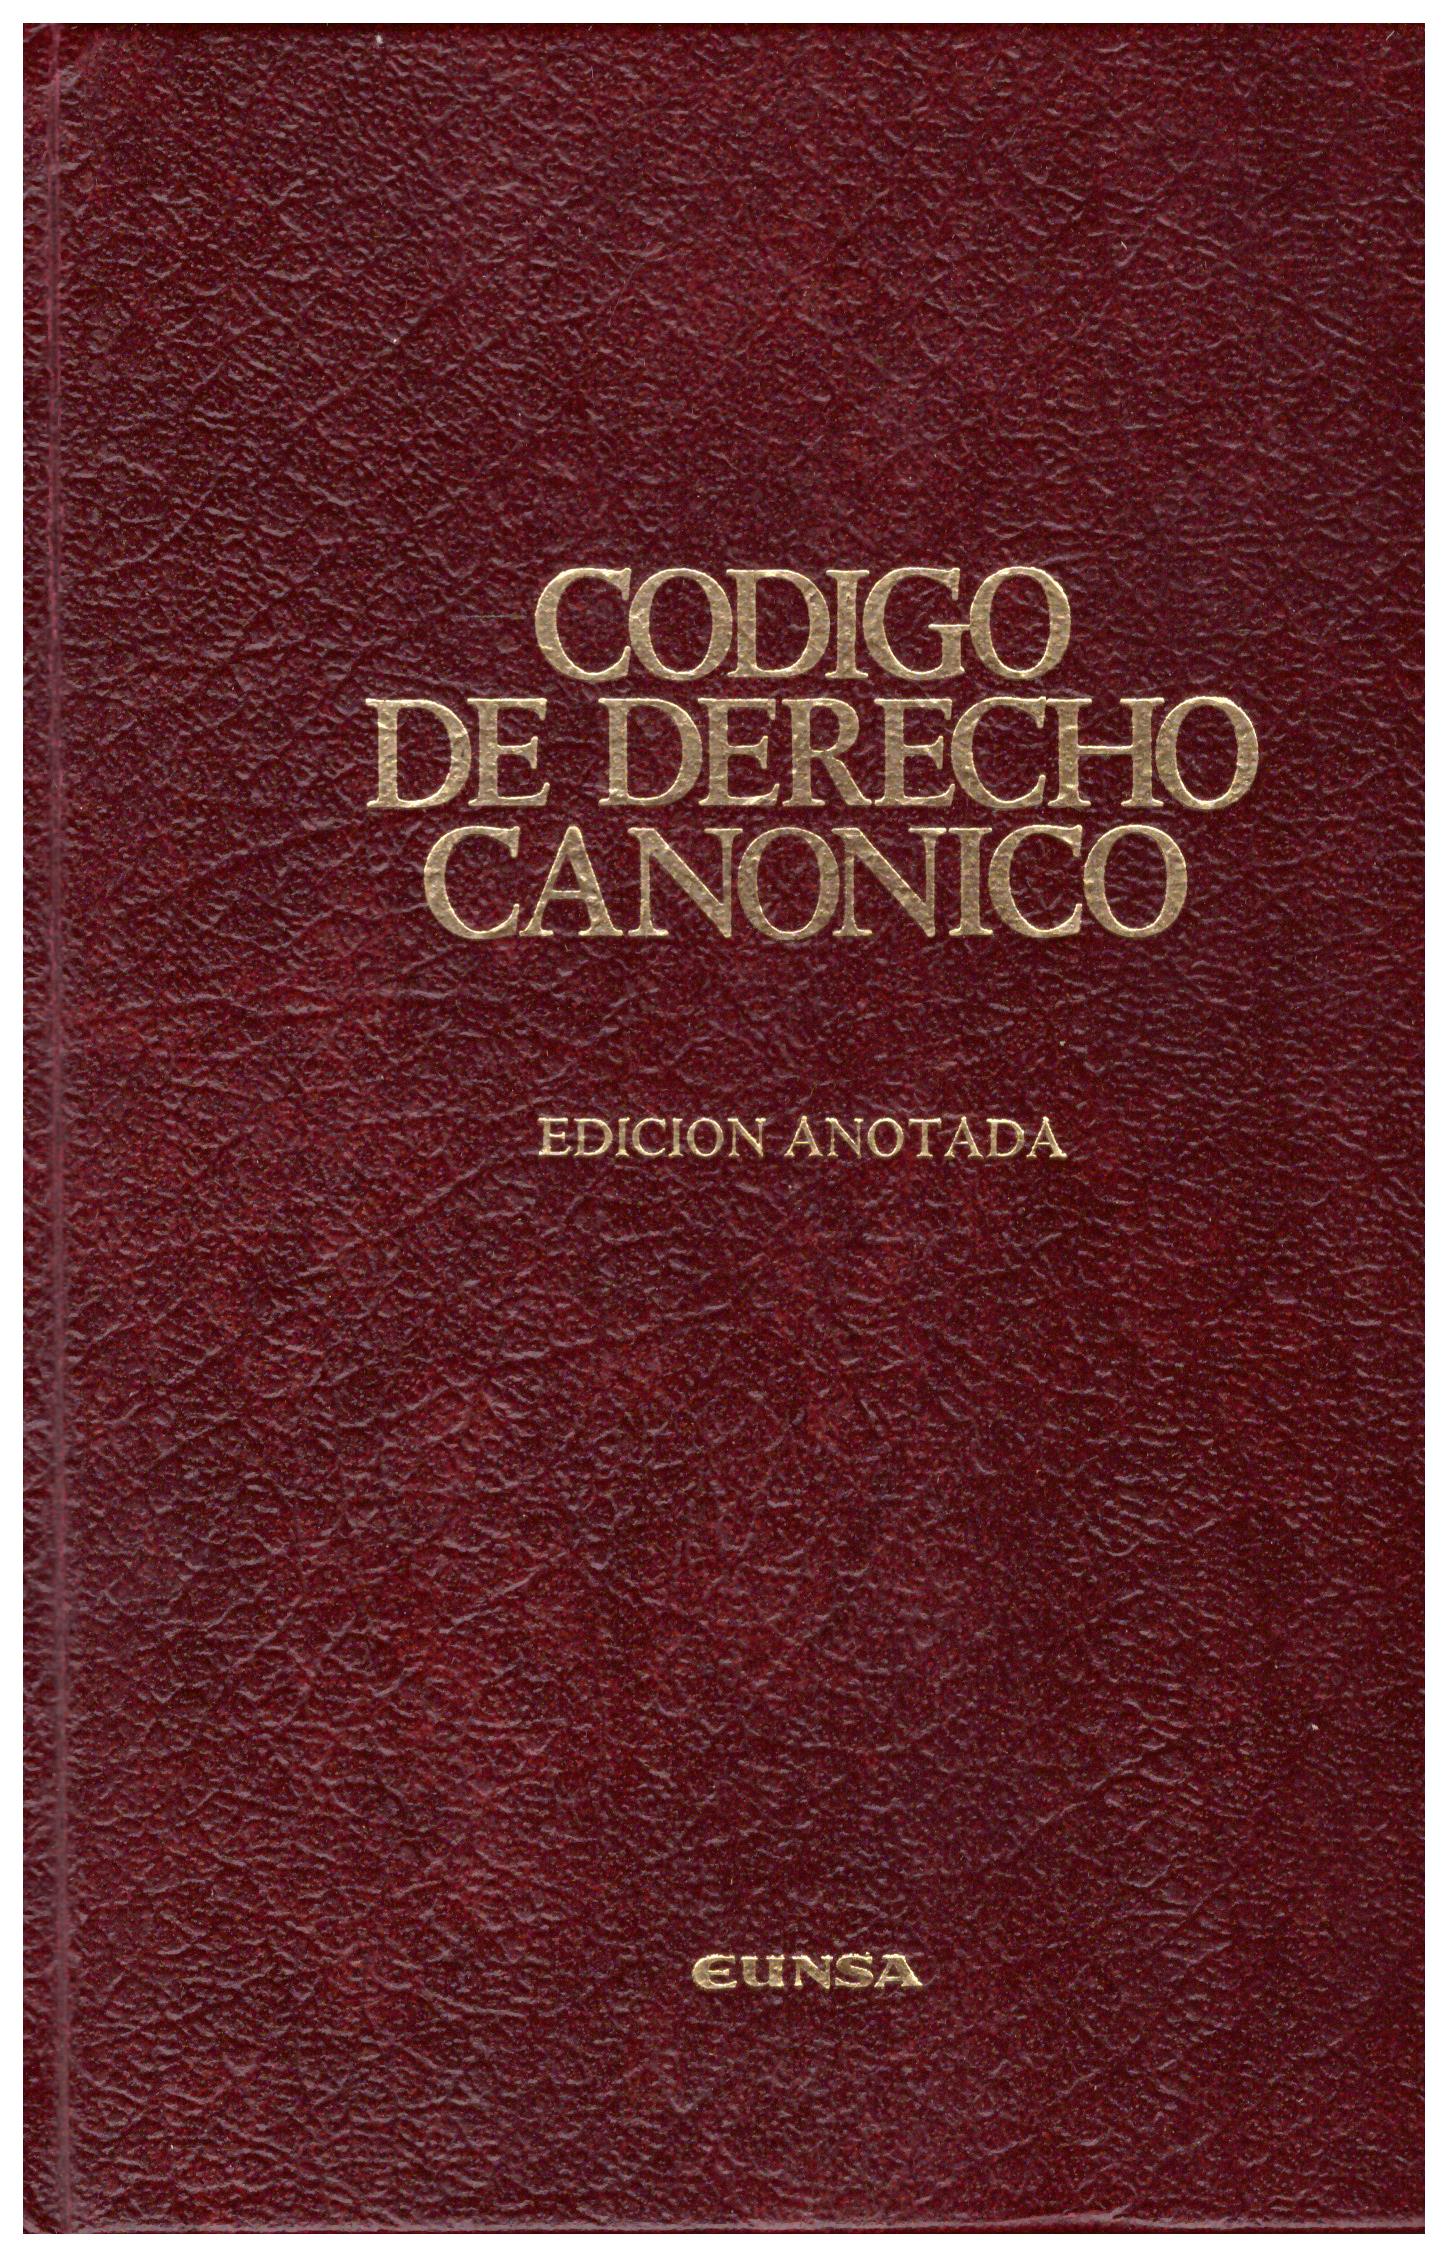 Titolo: Codigo de derecho canonico, ediction anotada     Autore: AA.VV.    Editore: Eunsa